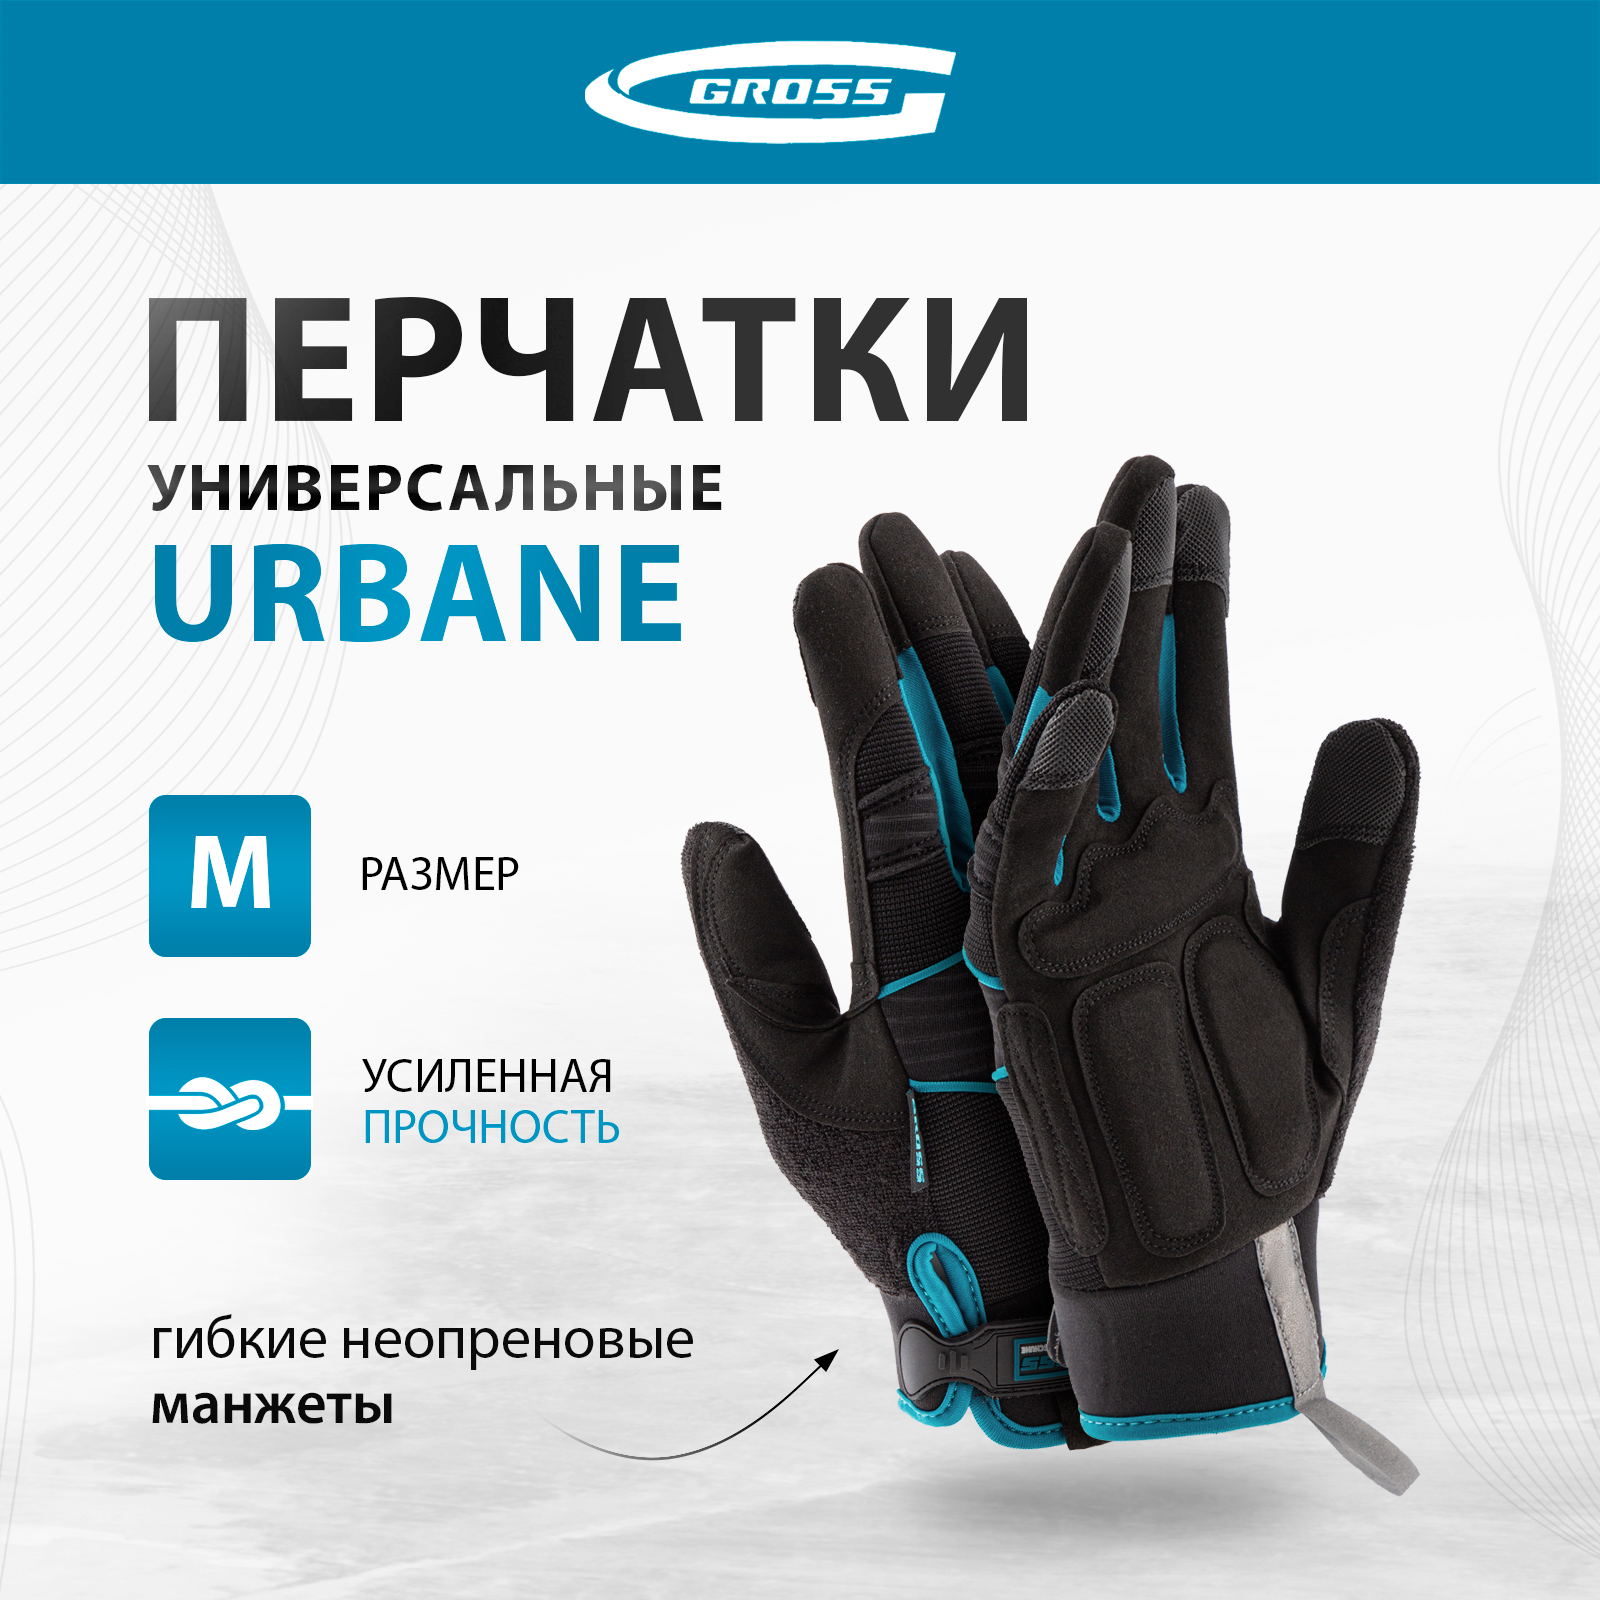 Перчатки универсальные комбинированные GROSS URBANE размер M (8) 90311 рабочие комбинированные перчатки tegera